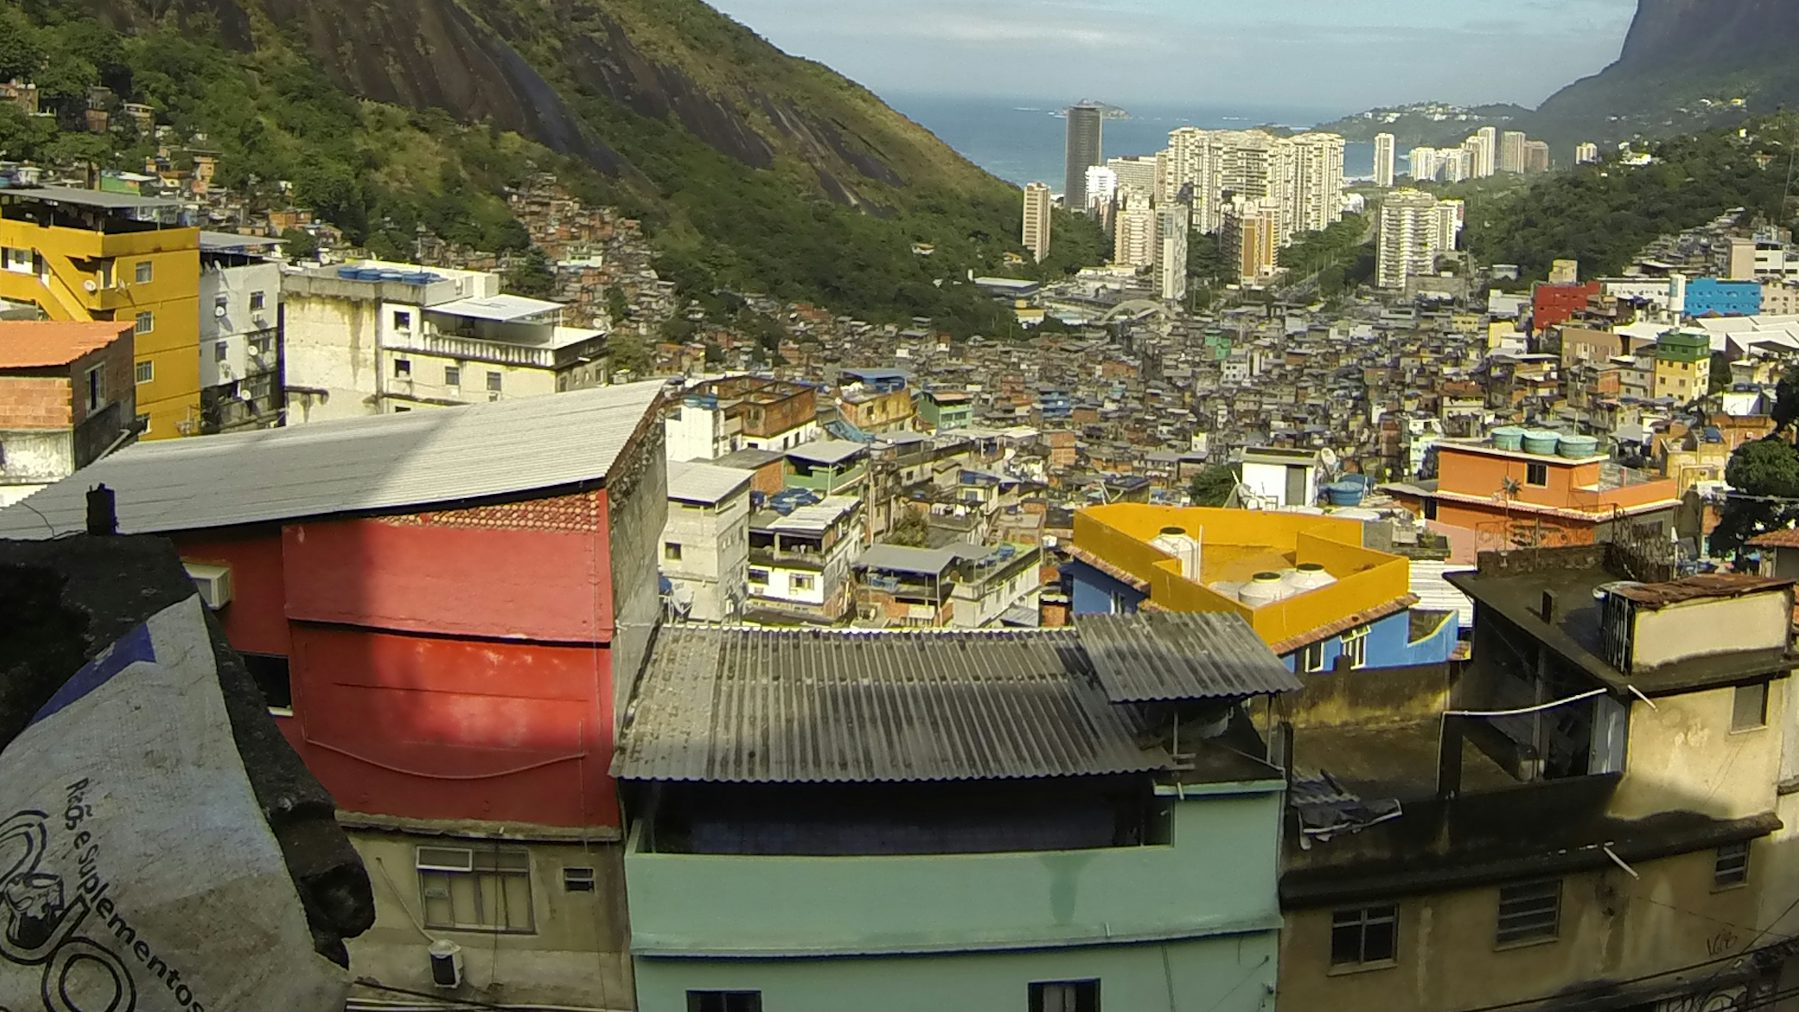 Le Favelas Brasiliane In 3 Luoghi Tra Povertà E Diritti Negati